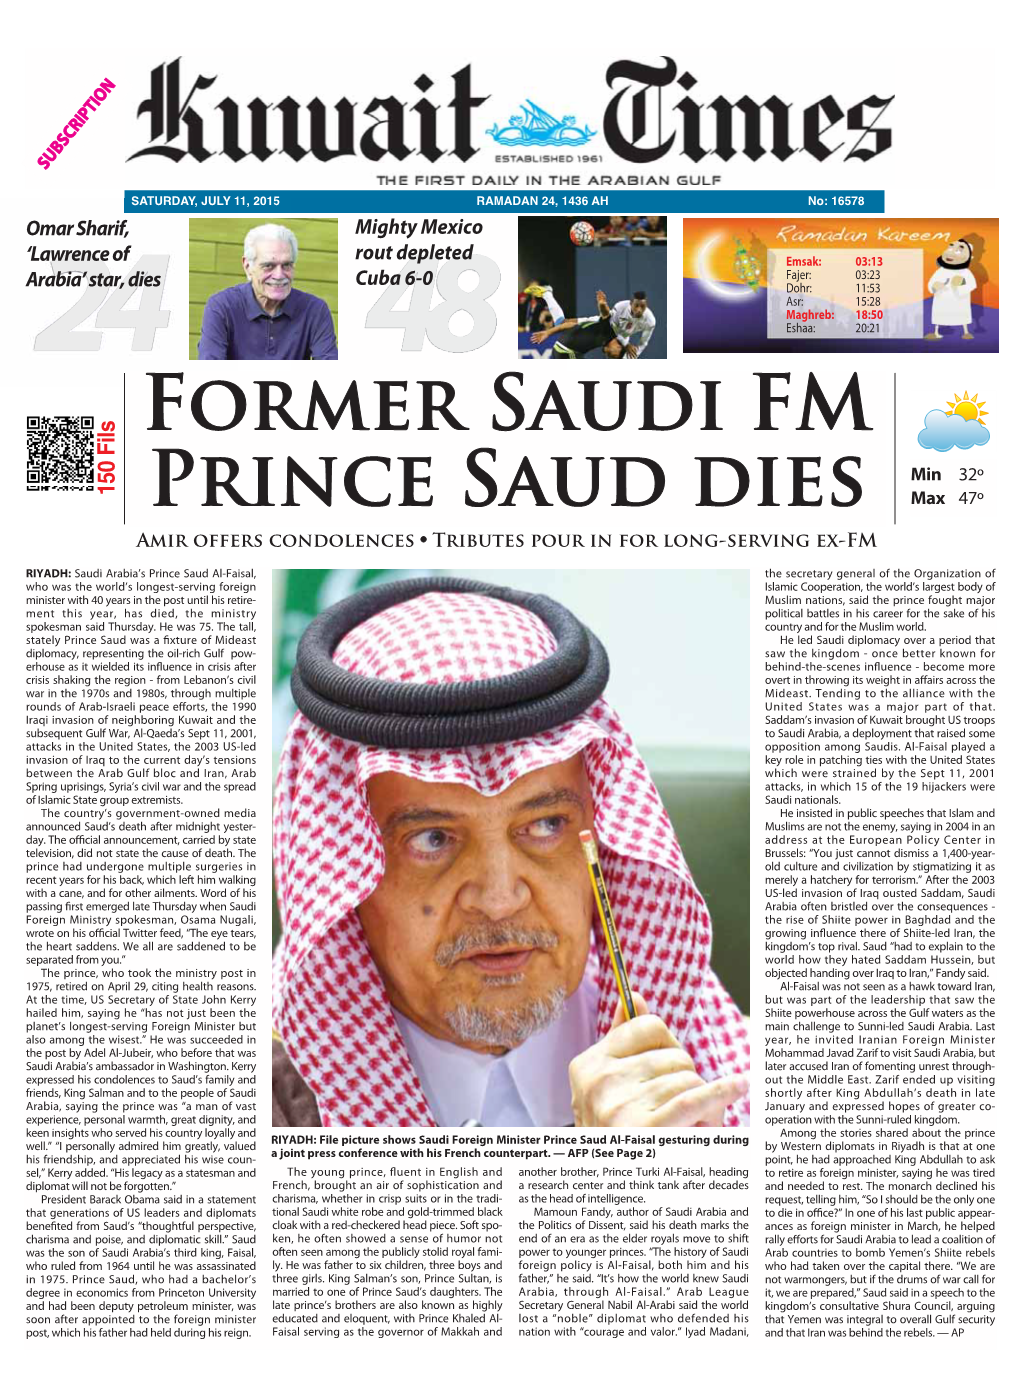 Former Saudi FM Prince Saud Dies